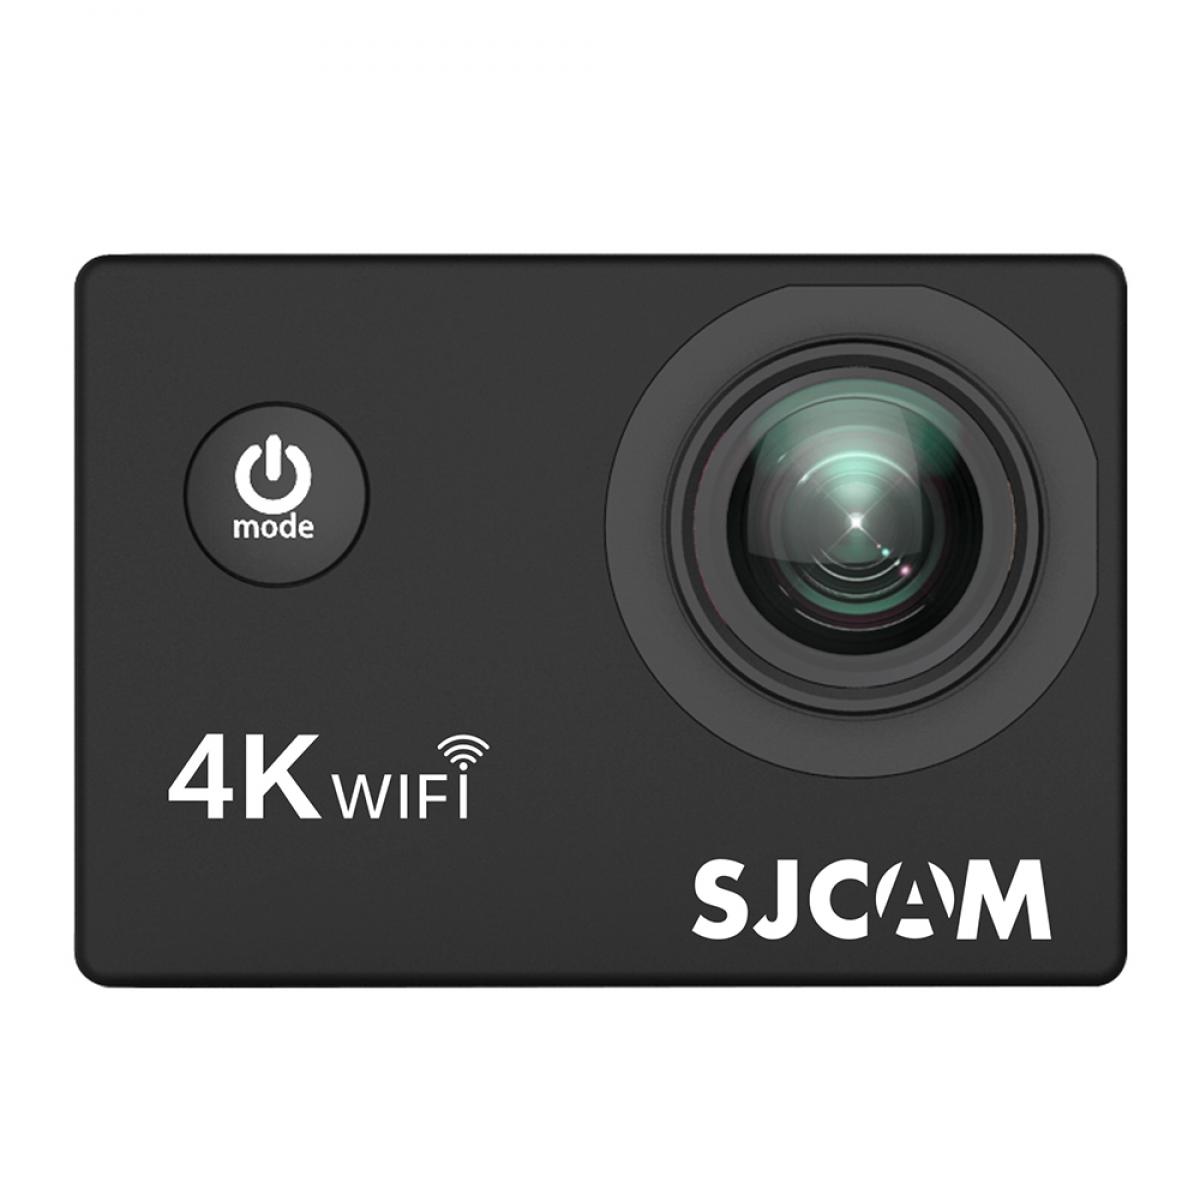 SJCAM SJ4000 AIR Action Camera Deportiva 4K 30FPS WiFi 2.0 polegadas LCD, mergulho 30m à prova d'água